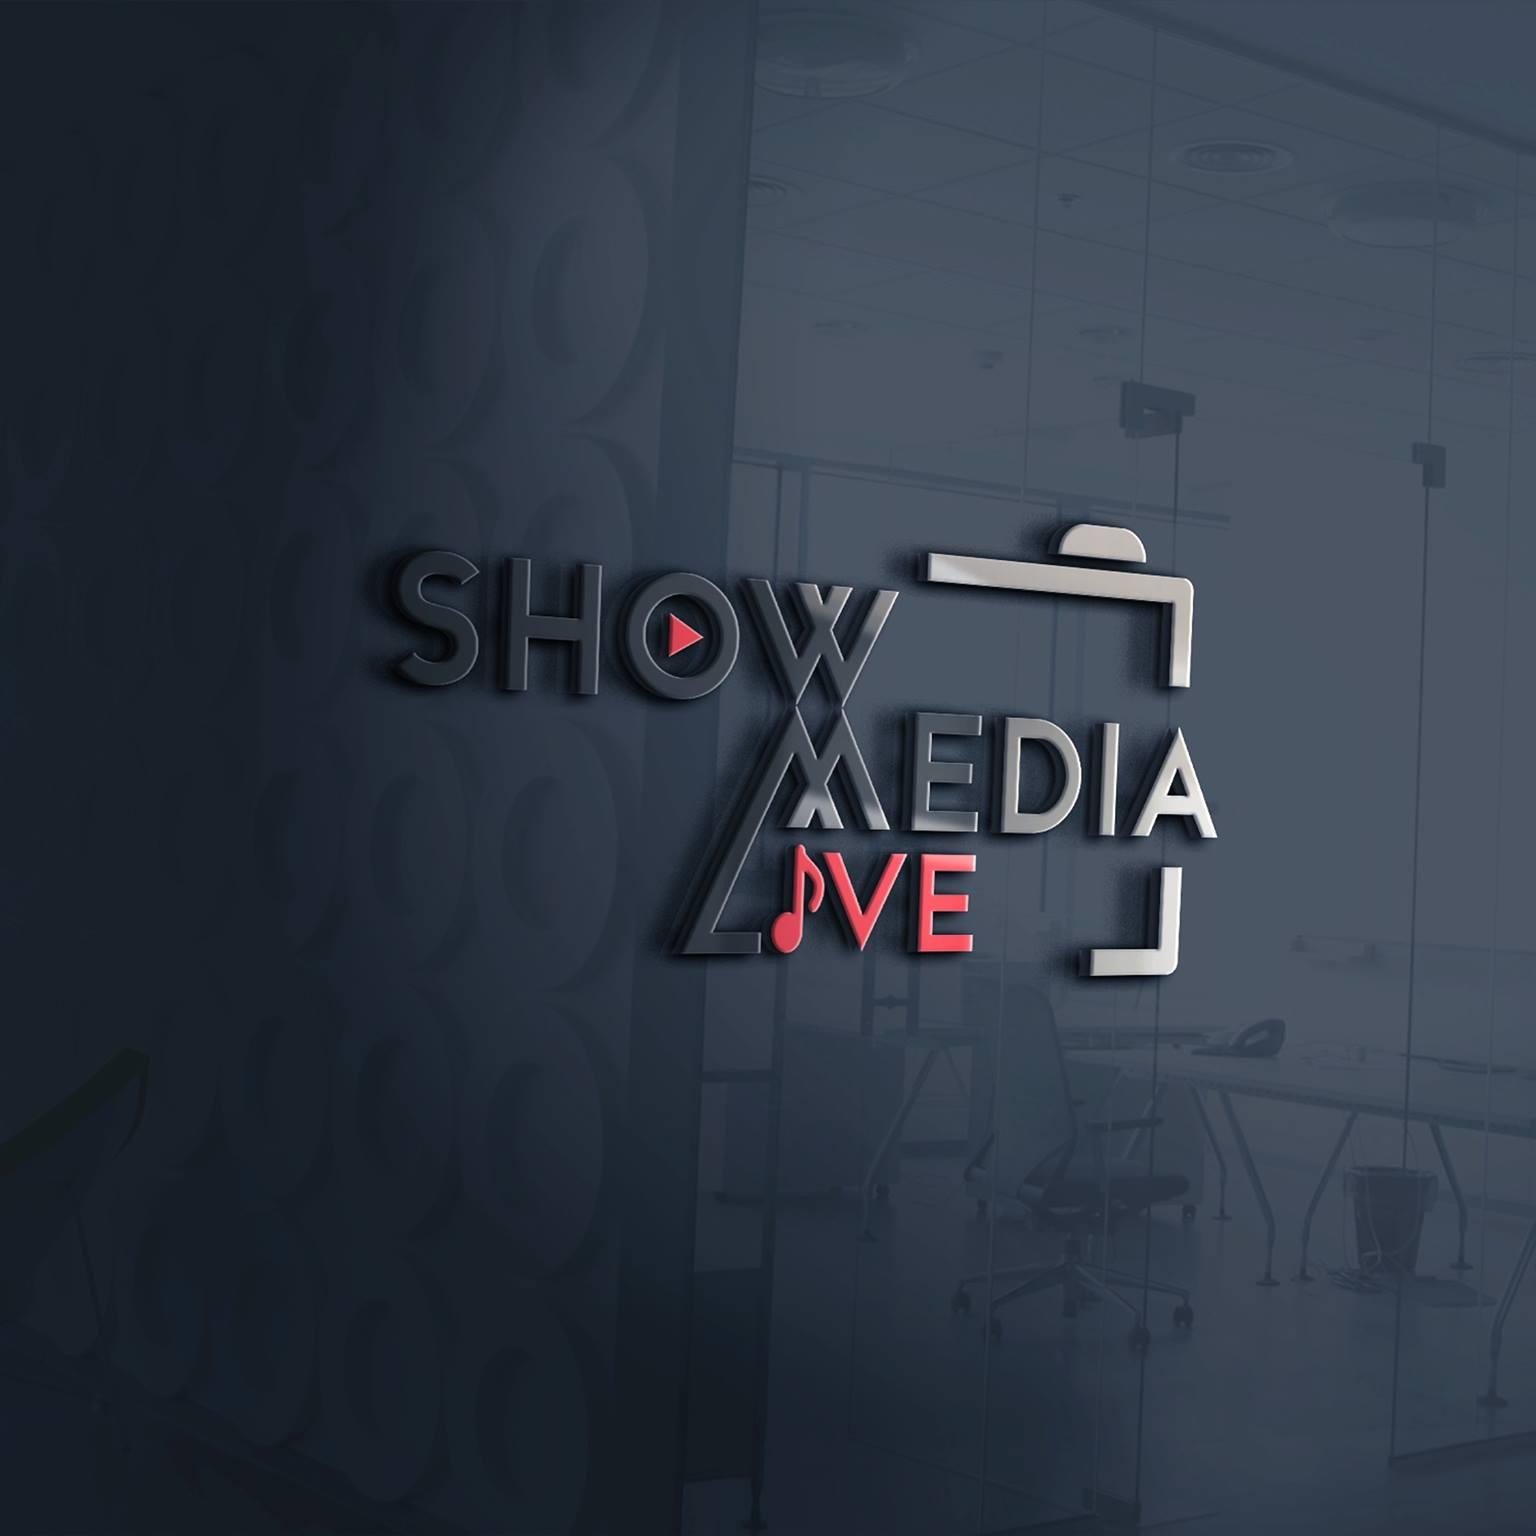 Show Media Live